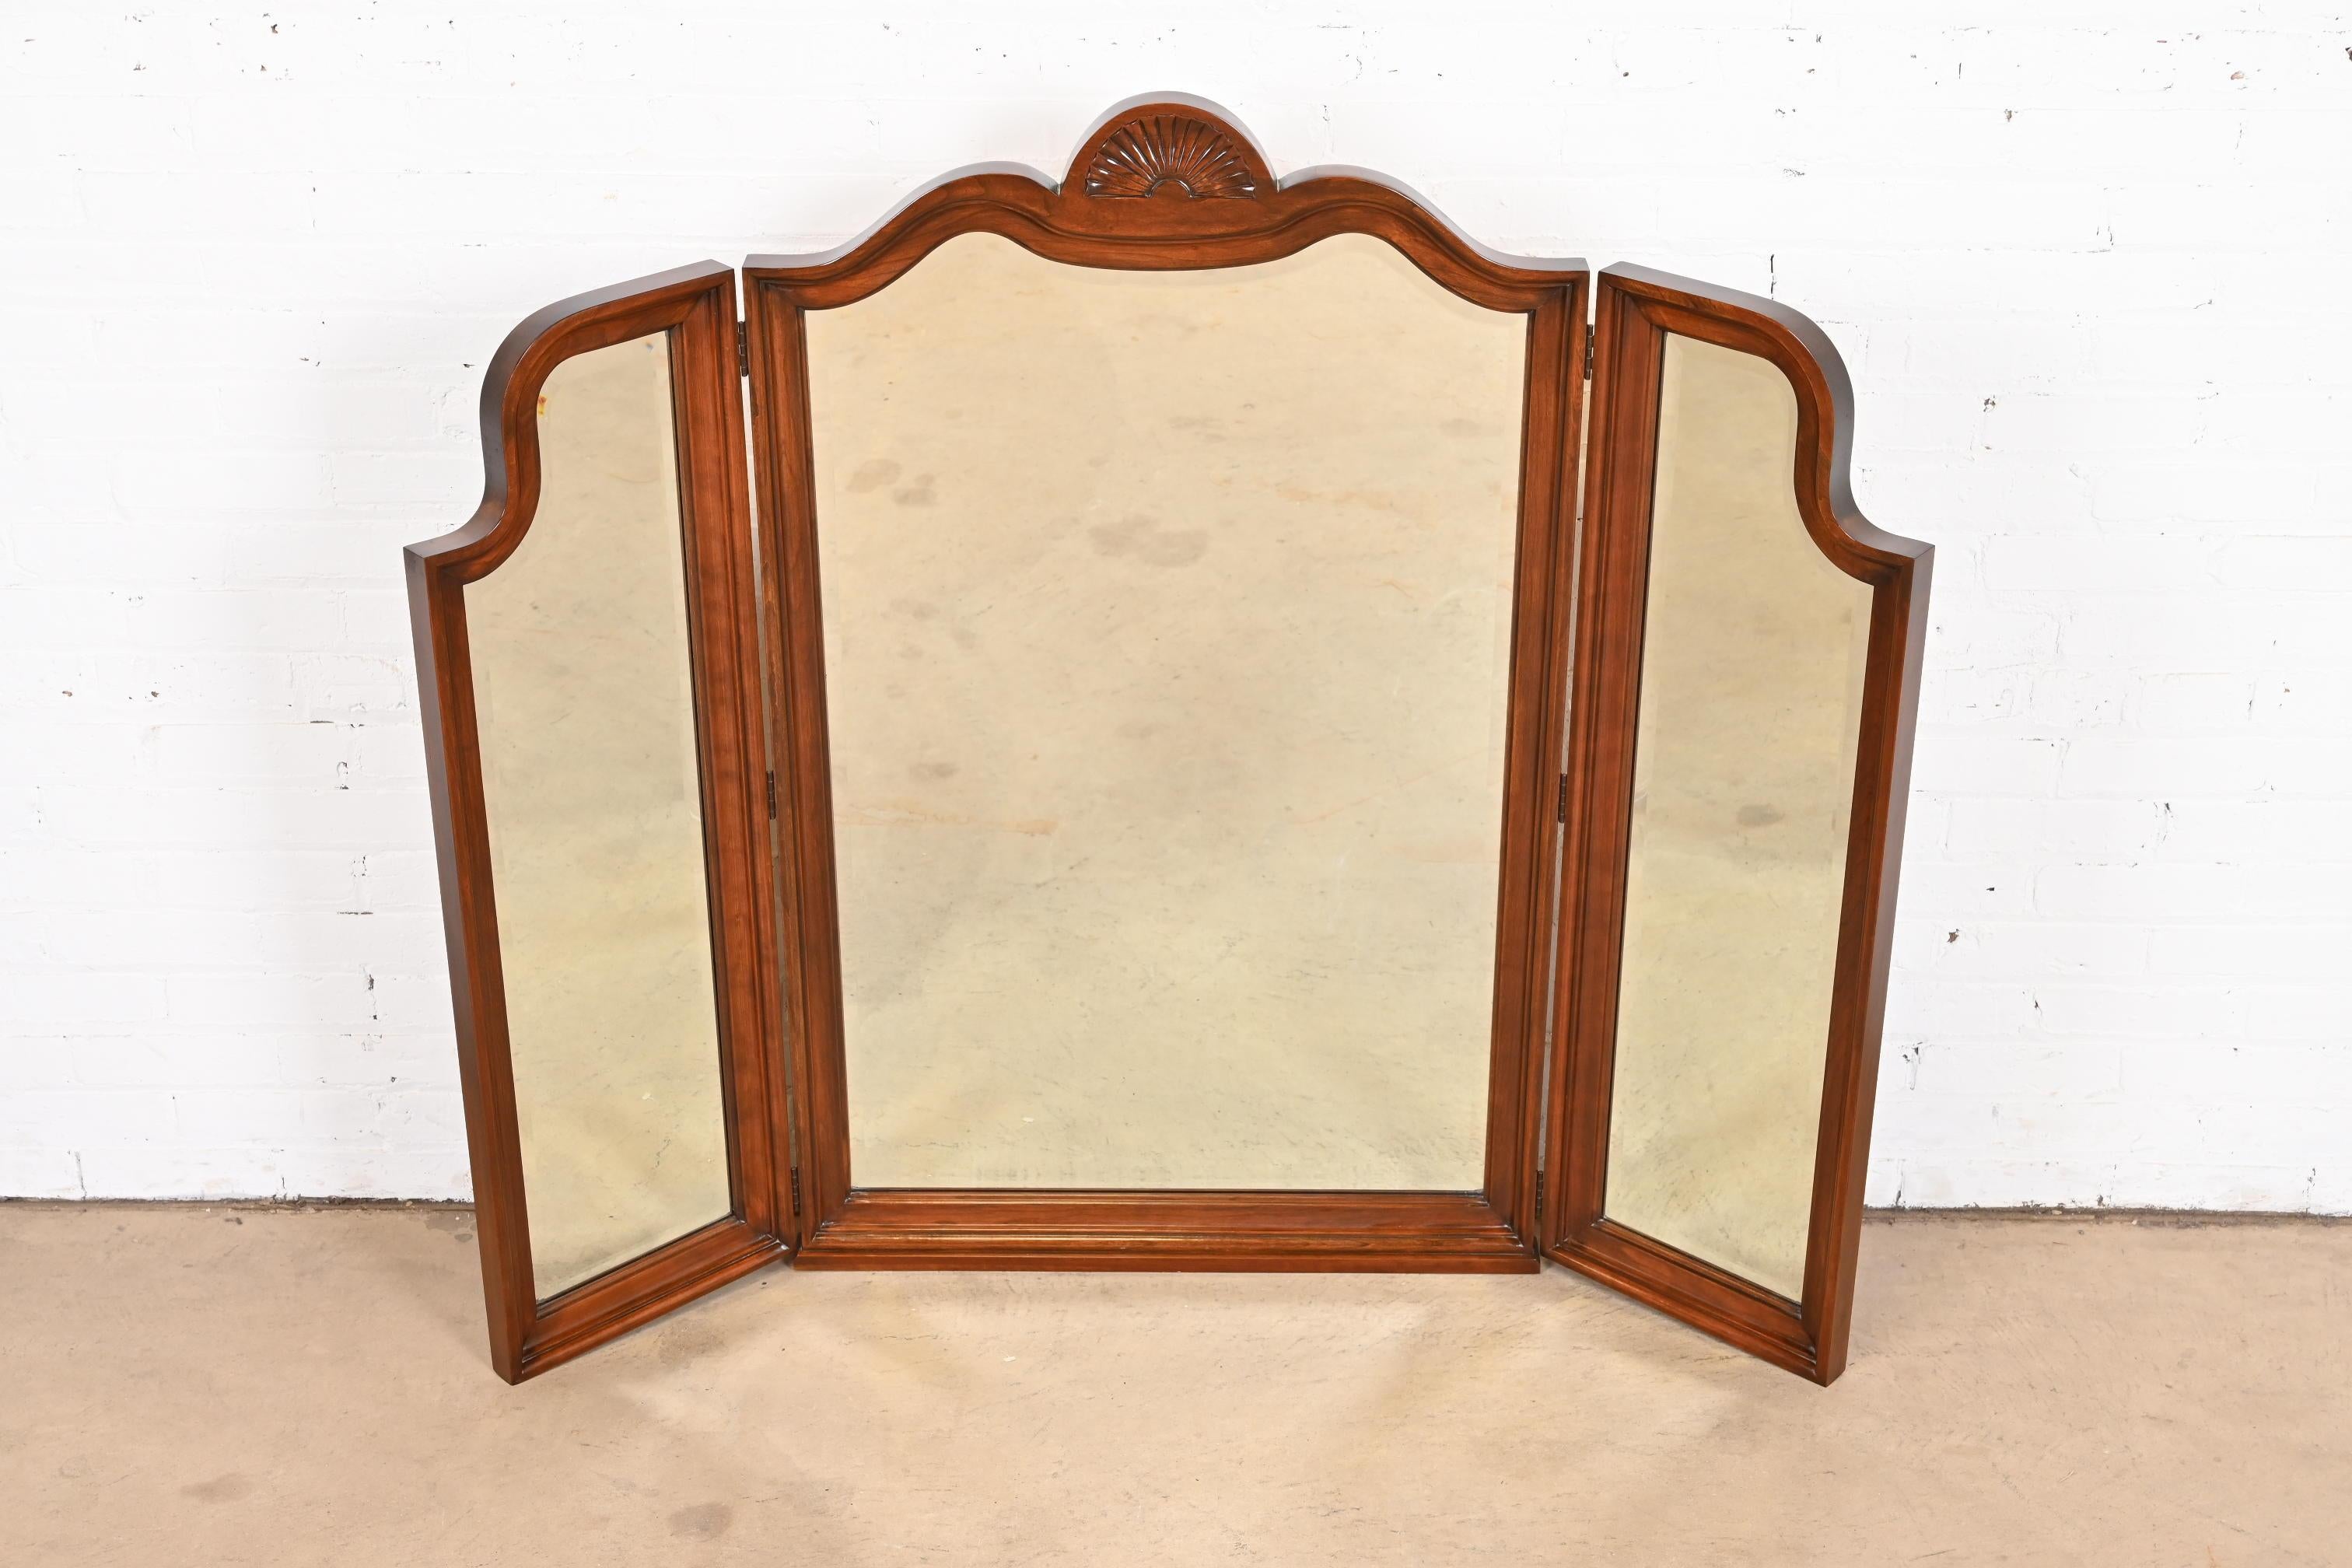 Eine wunderschöne georgianischen oder Chippendale-Stil geschnitzt Kirschholz gerahmt dreifach gefaltet dreifachen Spiegel

Von Harden Furniture

USA, Ende des 20. Jahrhunderts

Maße: 56 